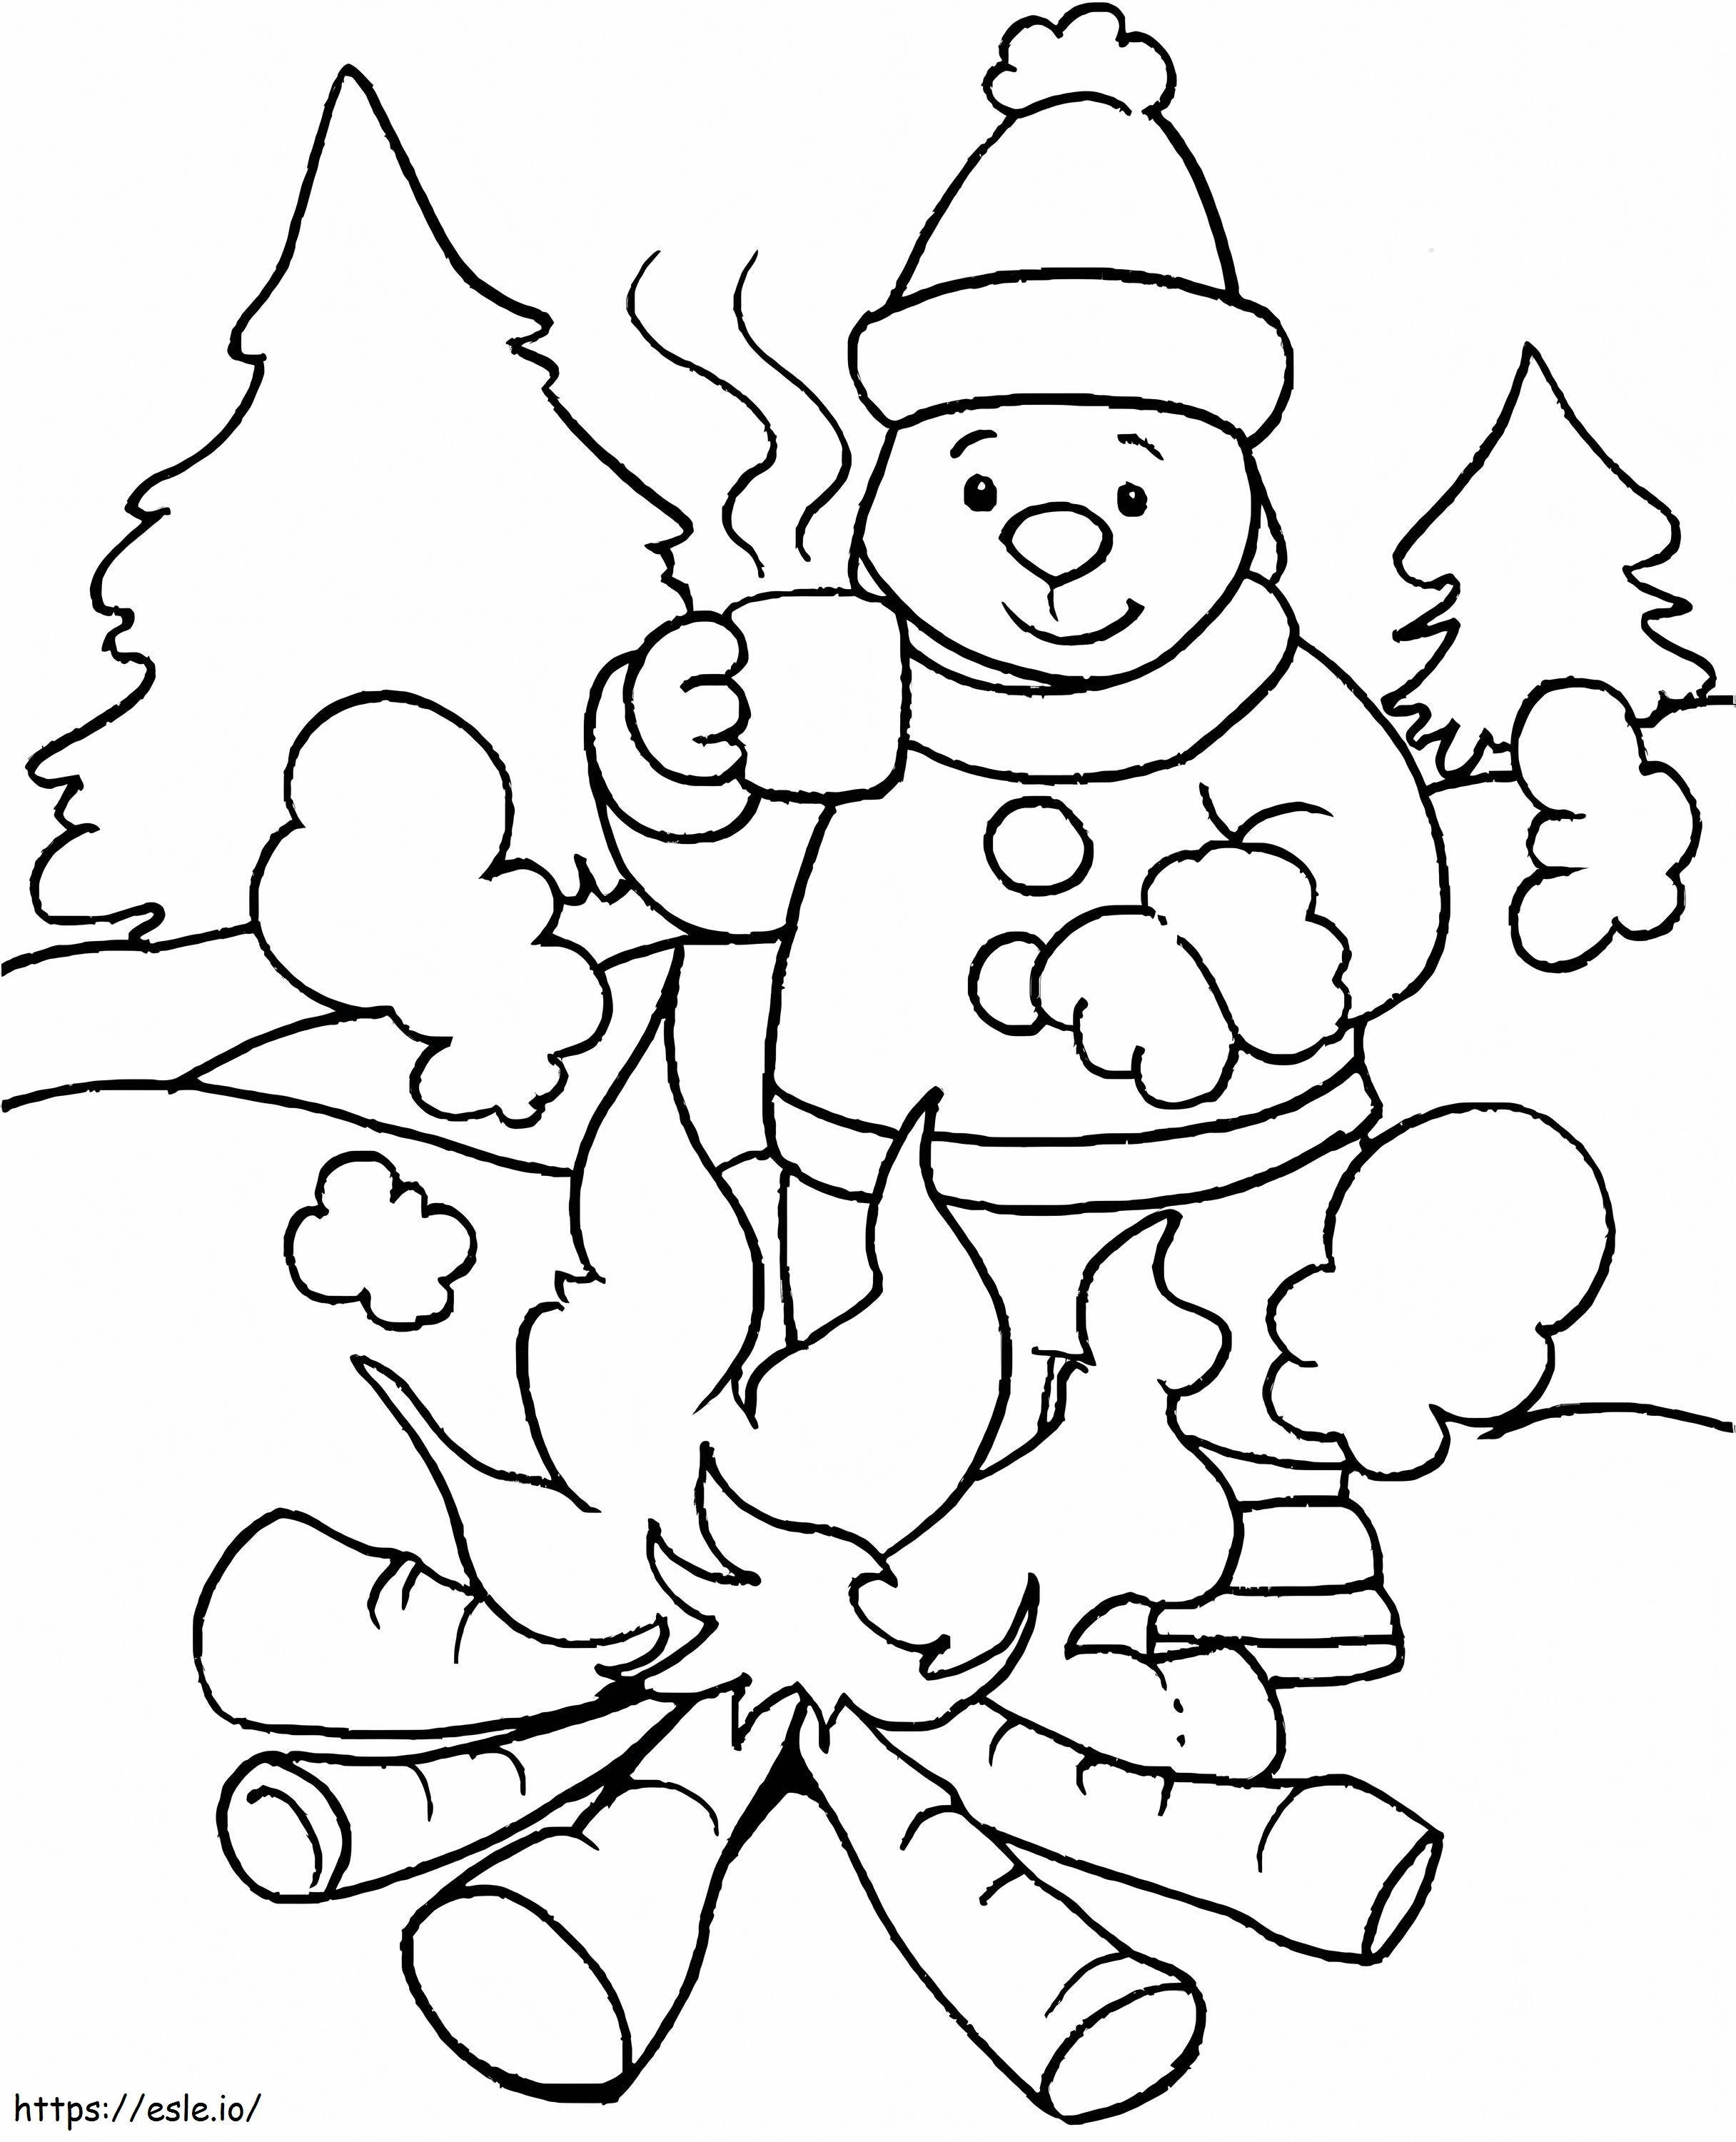 Accampamento dell'uomo e del pompiere in inverno da colorare